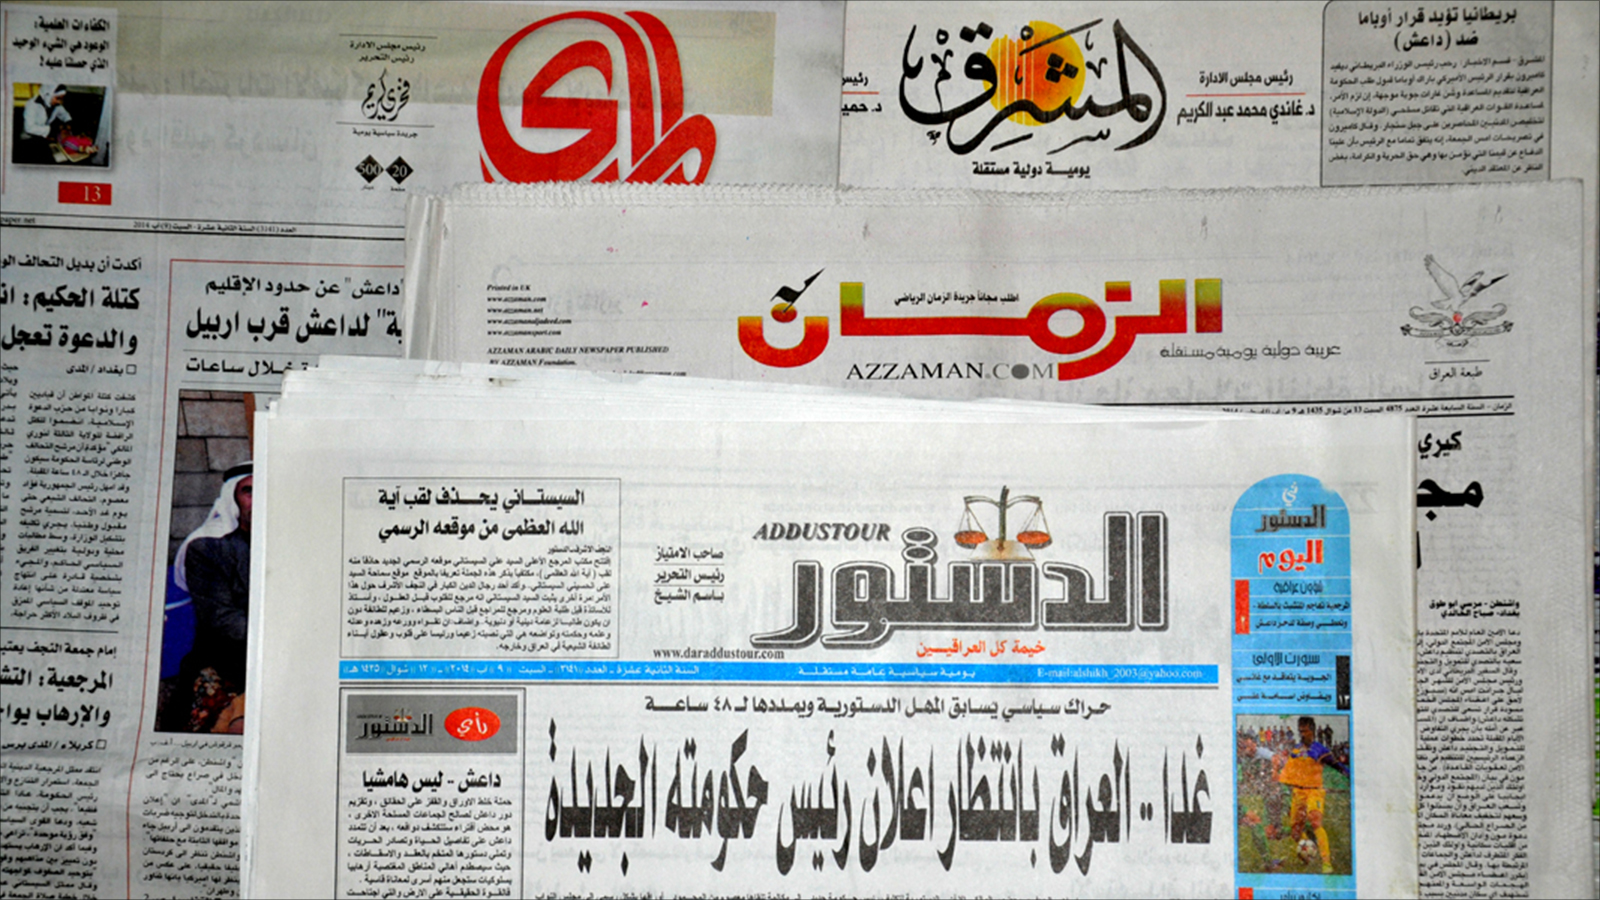 الصحف العراقية  تواجه أزمة مالية دفعتها لتقليل طواقمها وتقليص مطبوعاتها (الجزيرة نت)